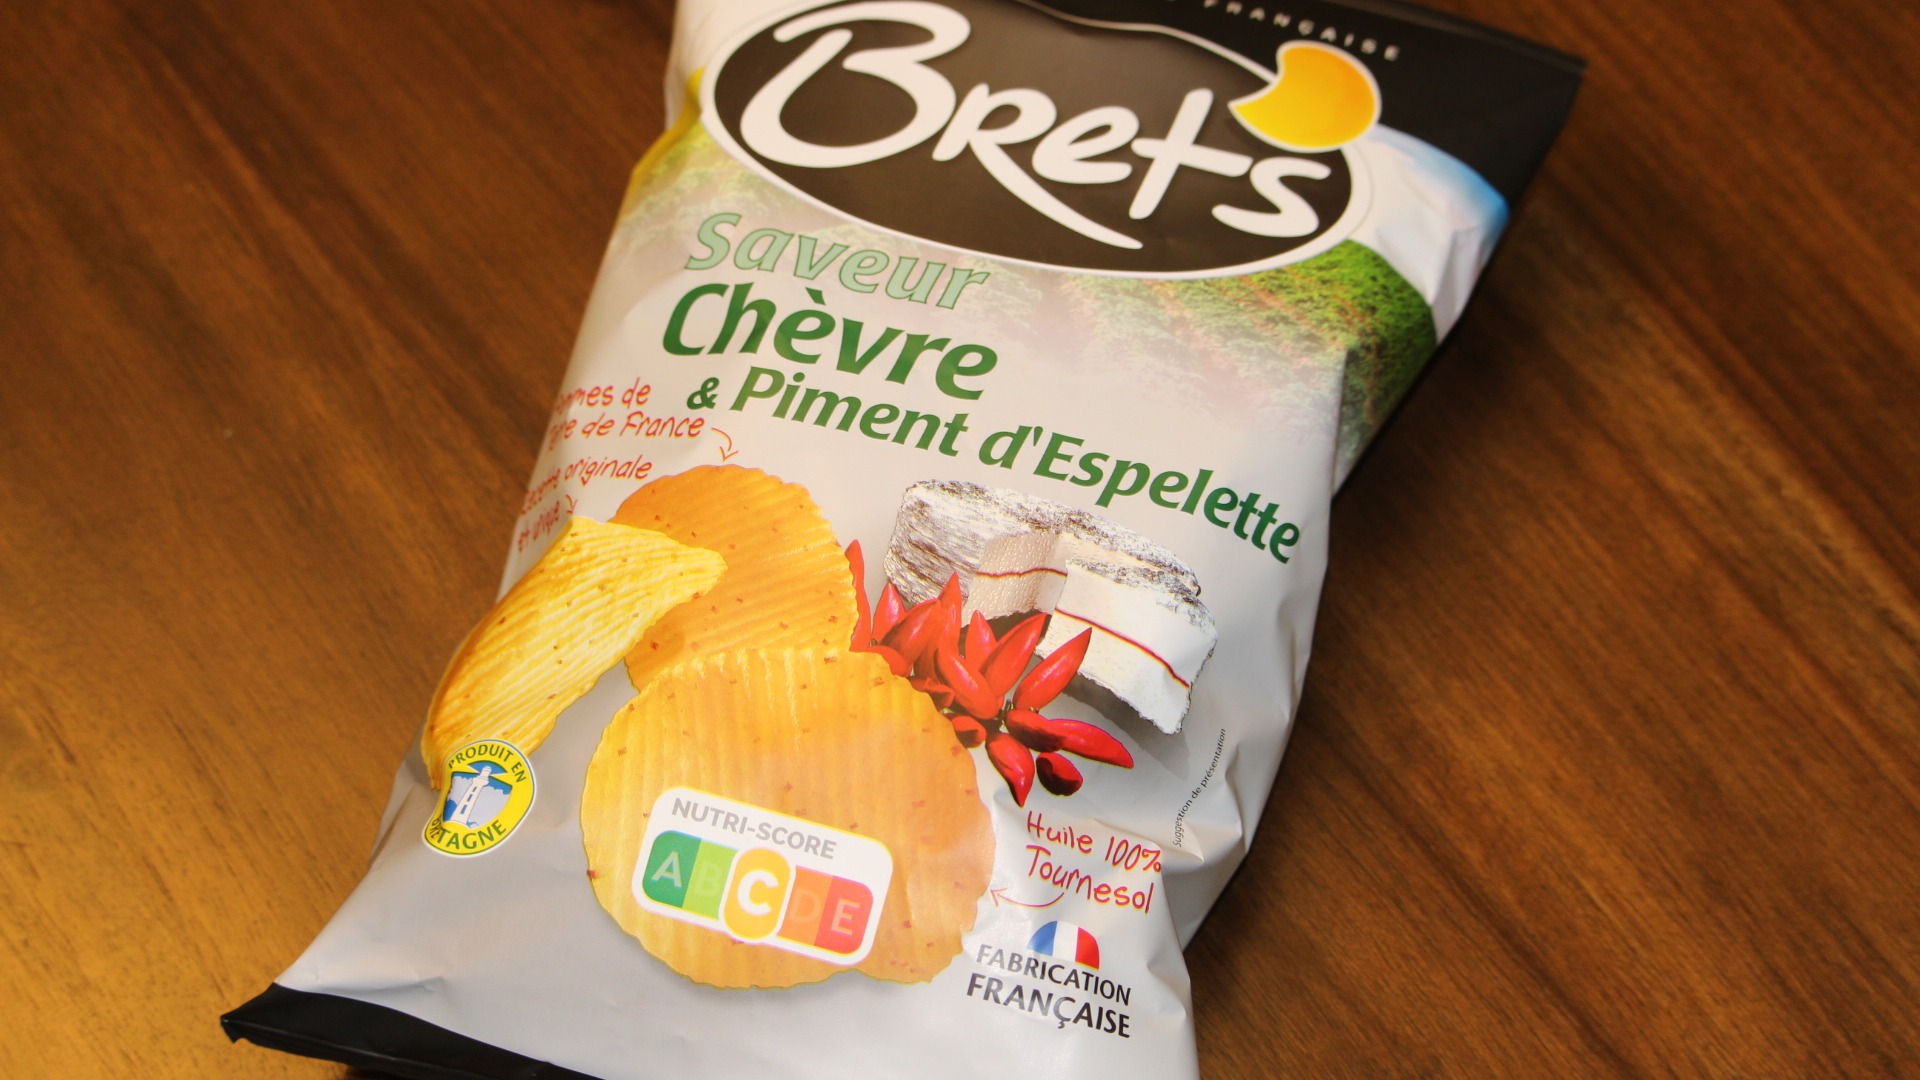  Brets Chips Chevre & Piment d'Espelette 125g